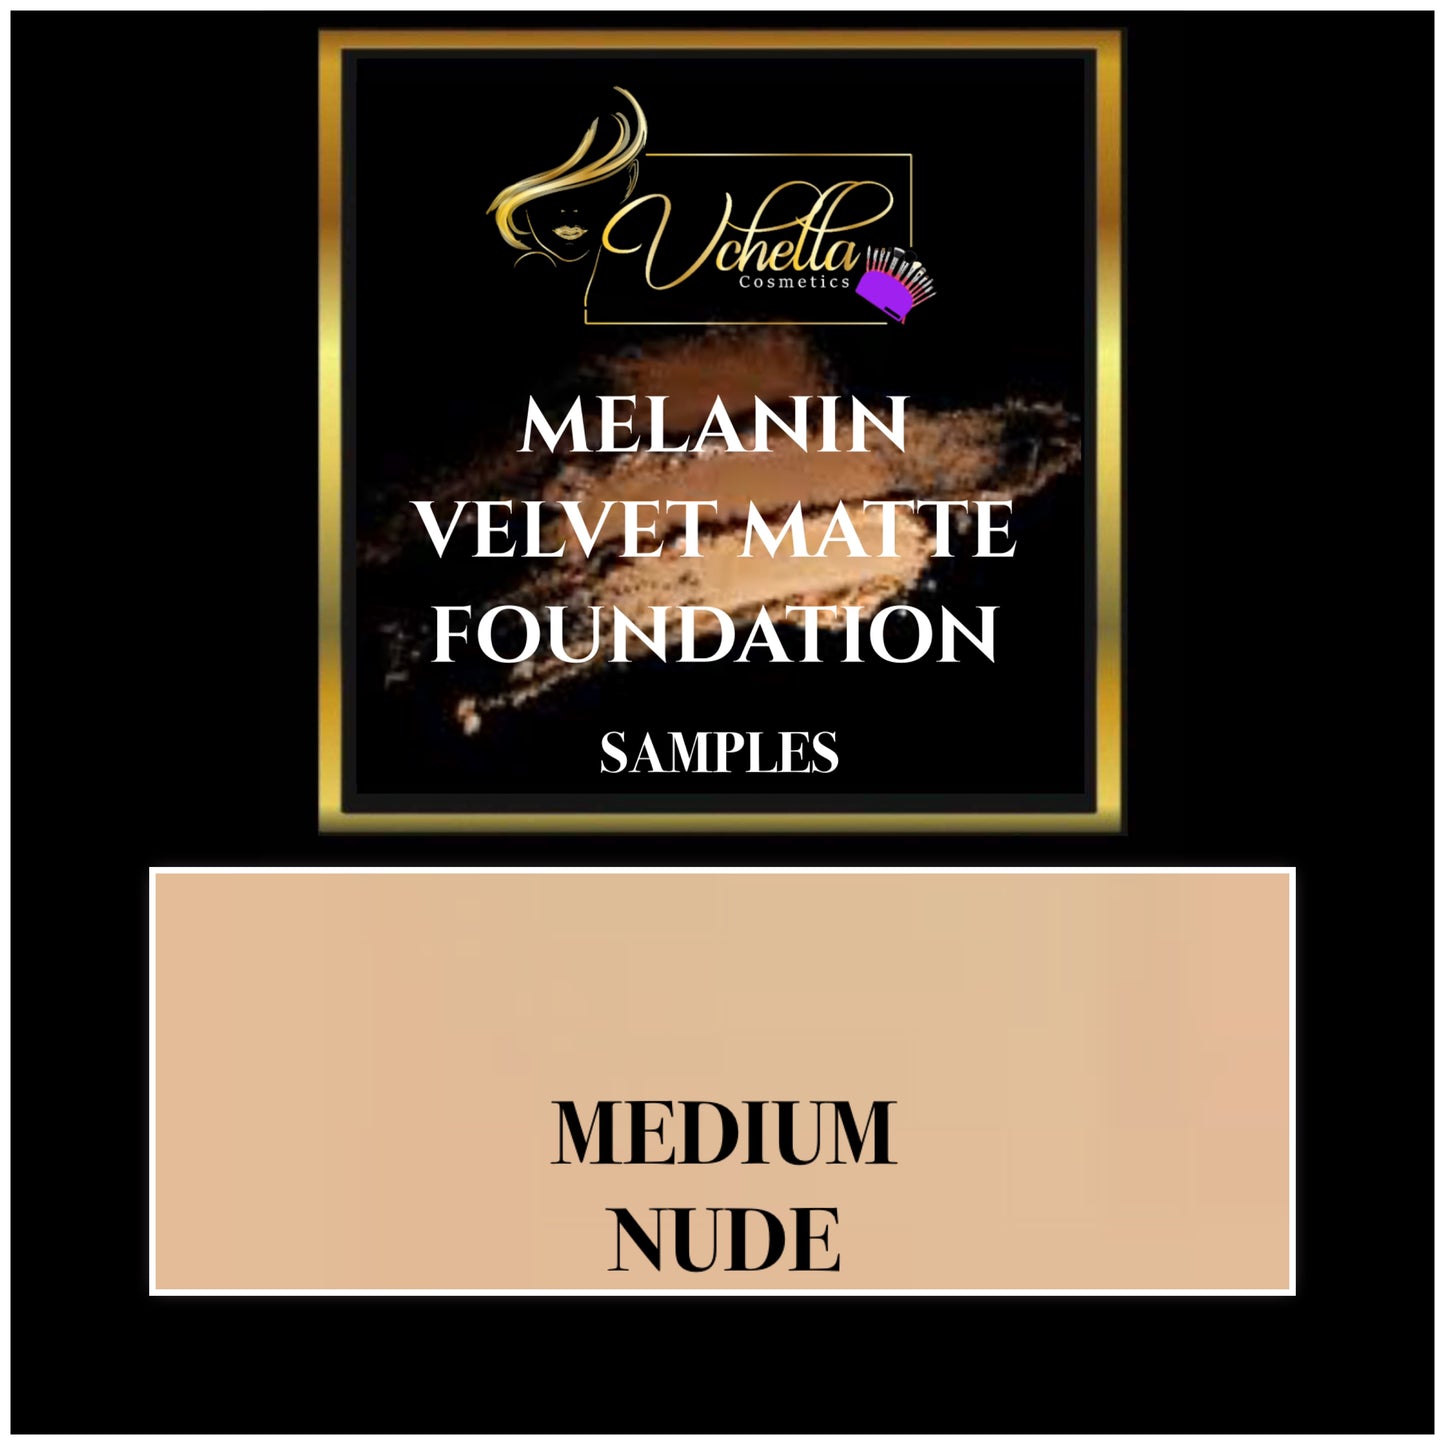 MELANIN VELVET MATTE FOUNDATION (SAMPLES)